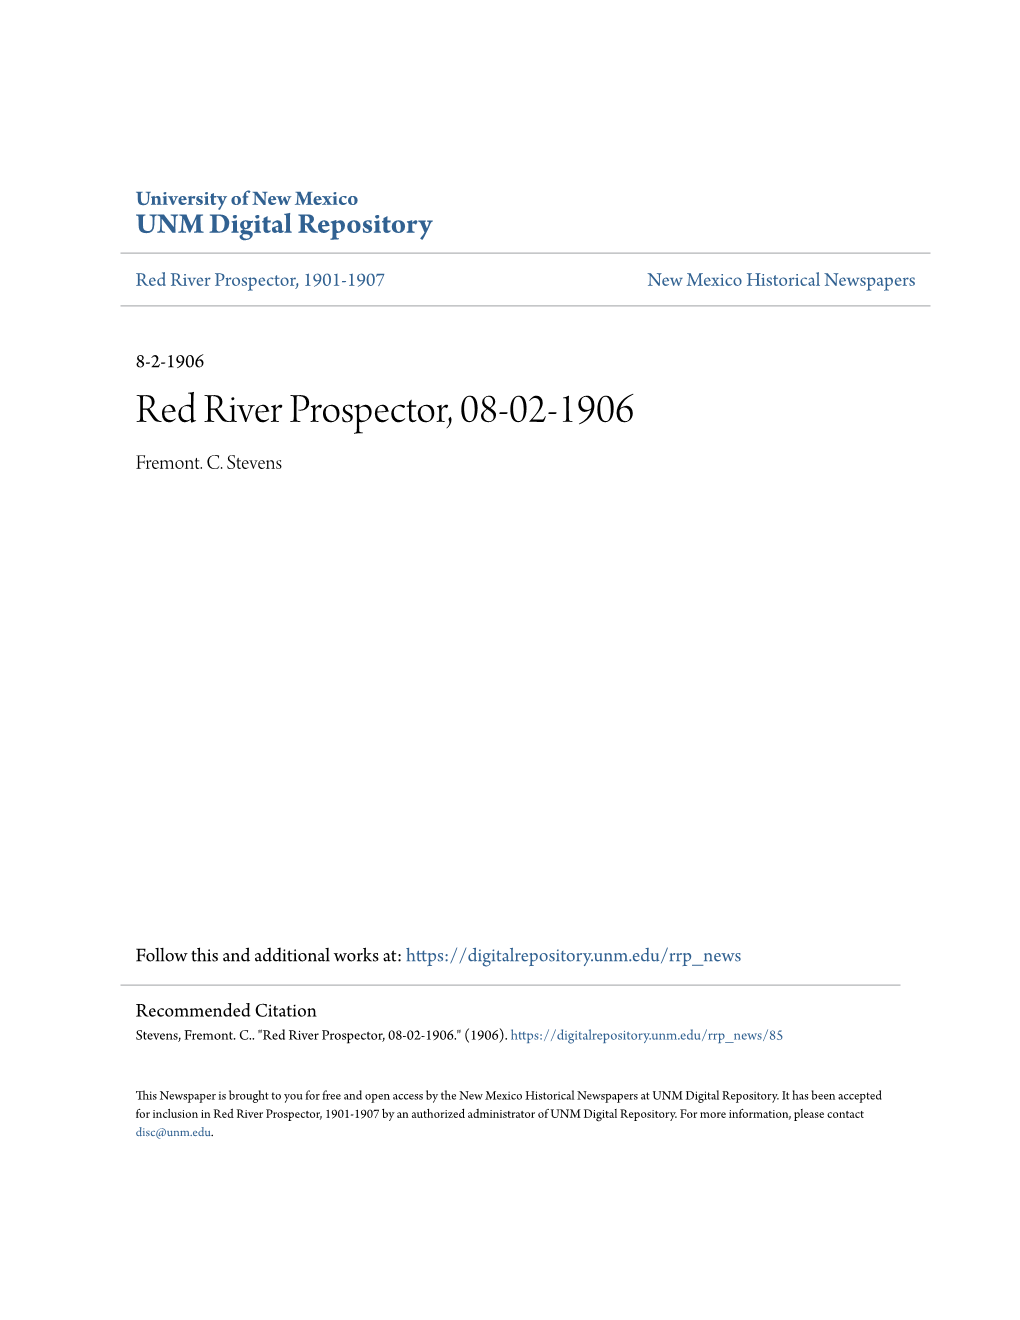 Red River Prospector, 08-02-1906 Fremont